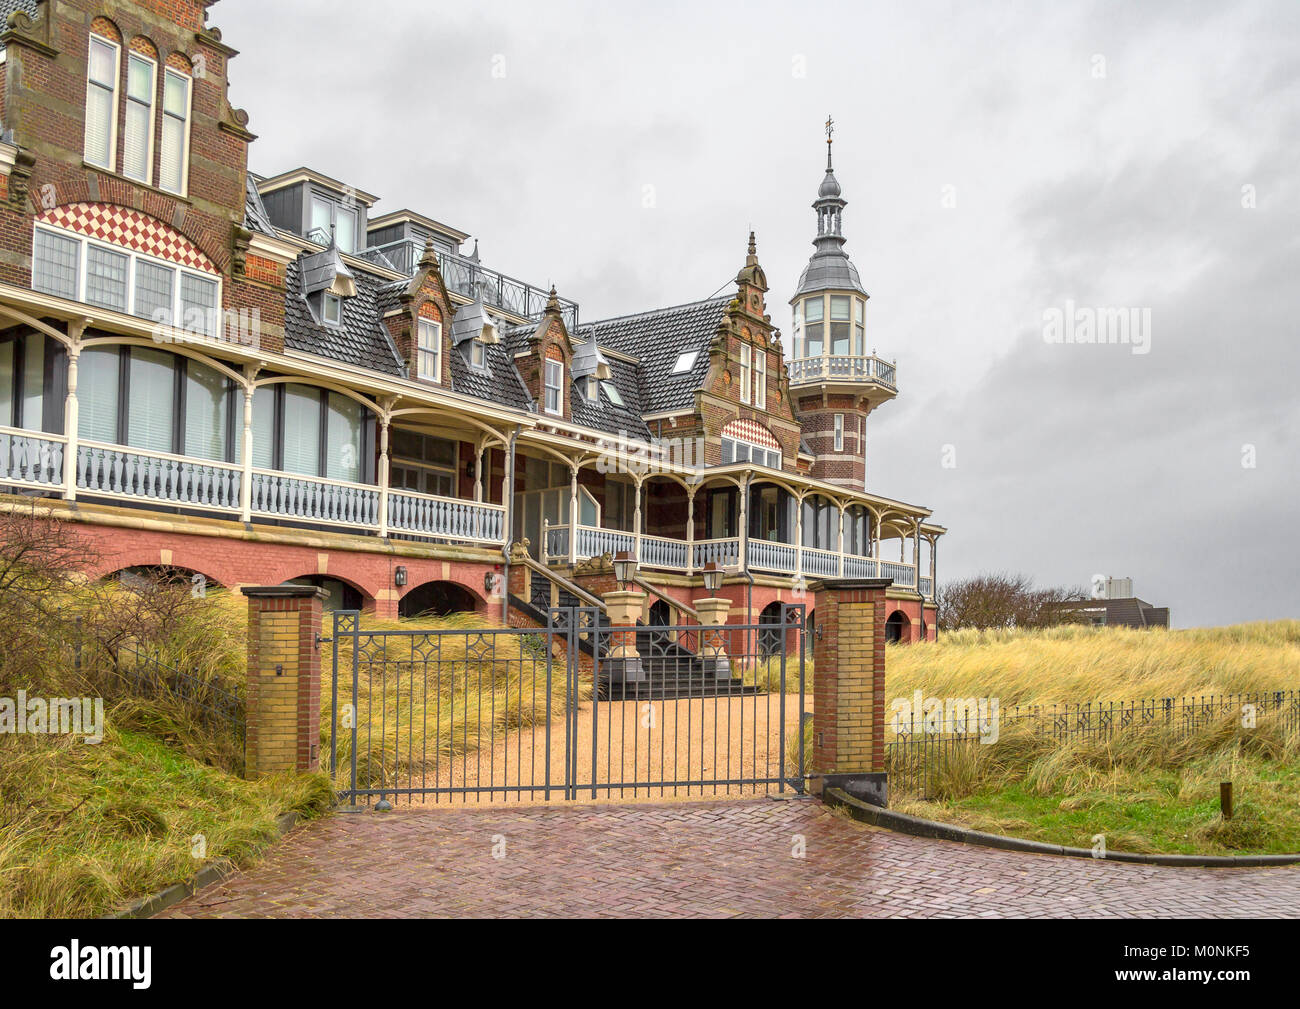 La balneazione glamour pavillon visto in una località balneare denominato Domburg situato nella provincia olandese dello Zeeland Foto Stock